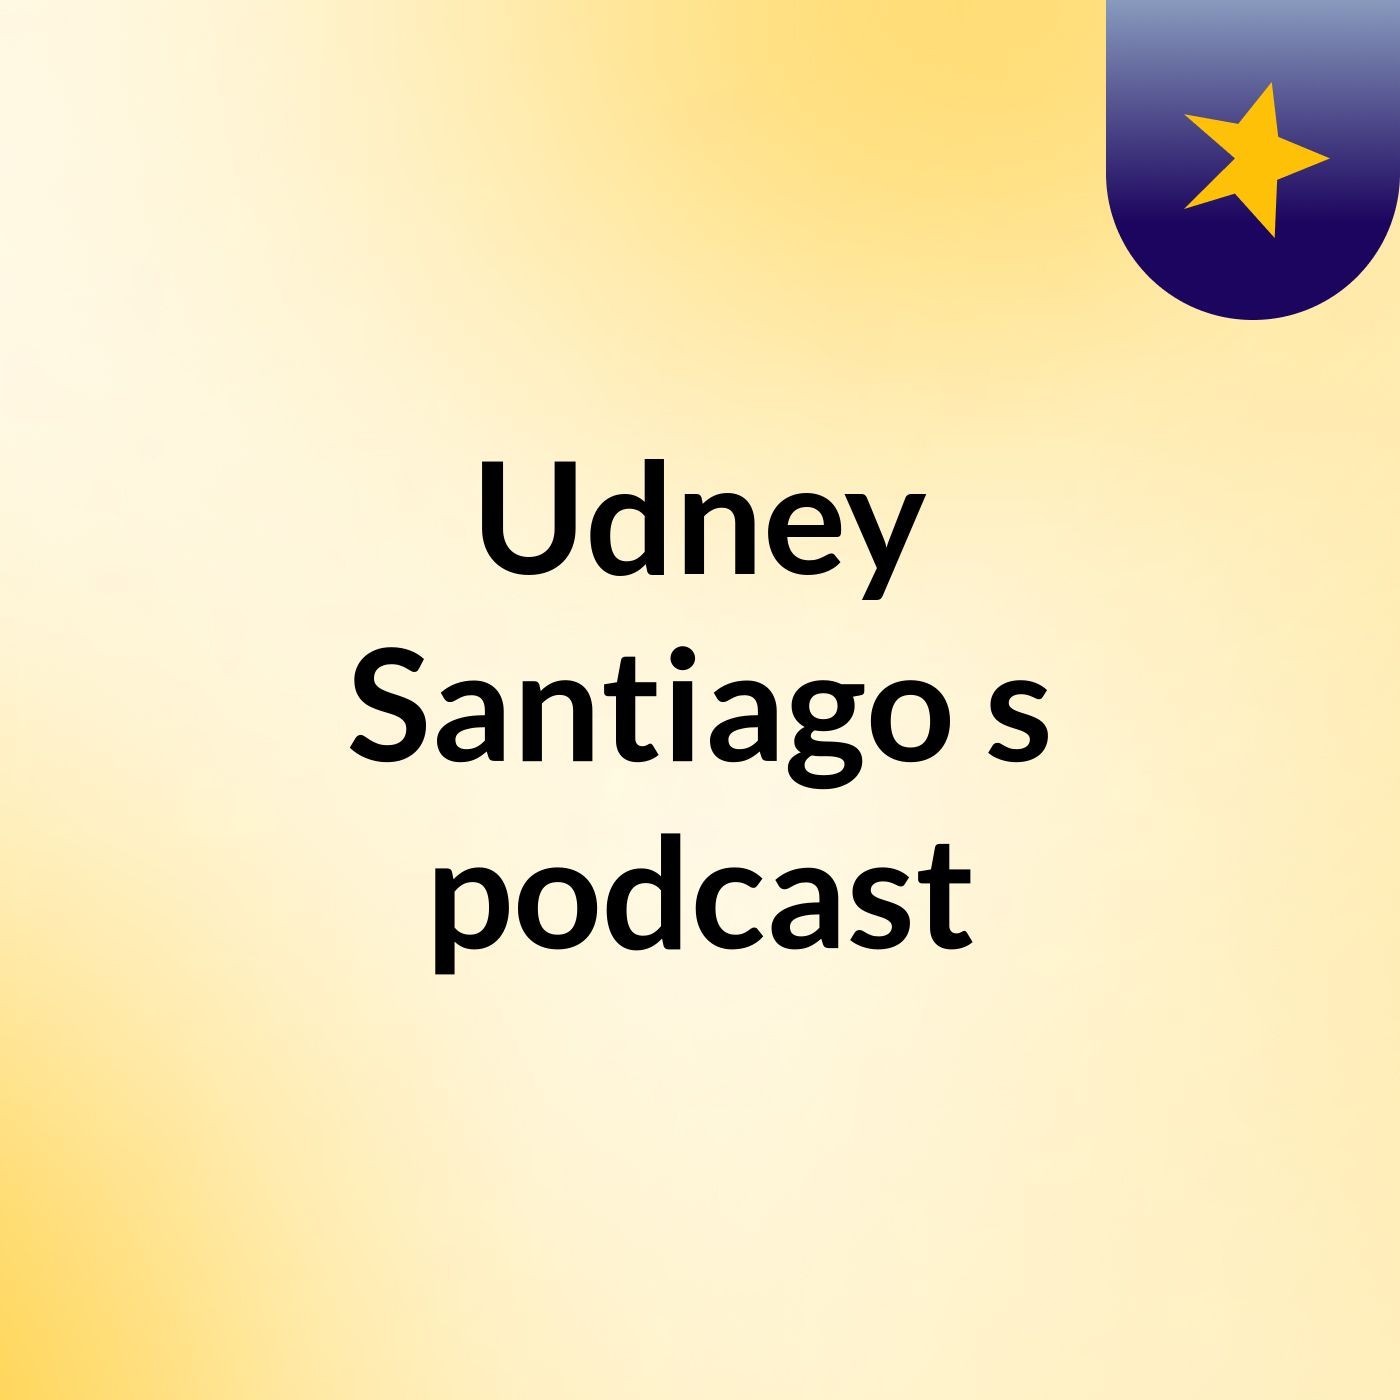 Udney Santiago's podcast